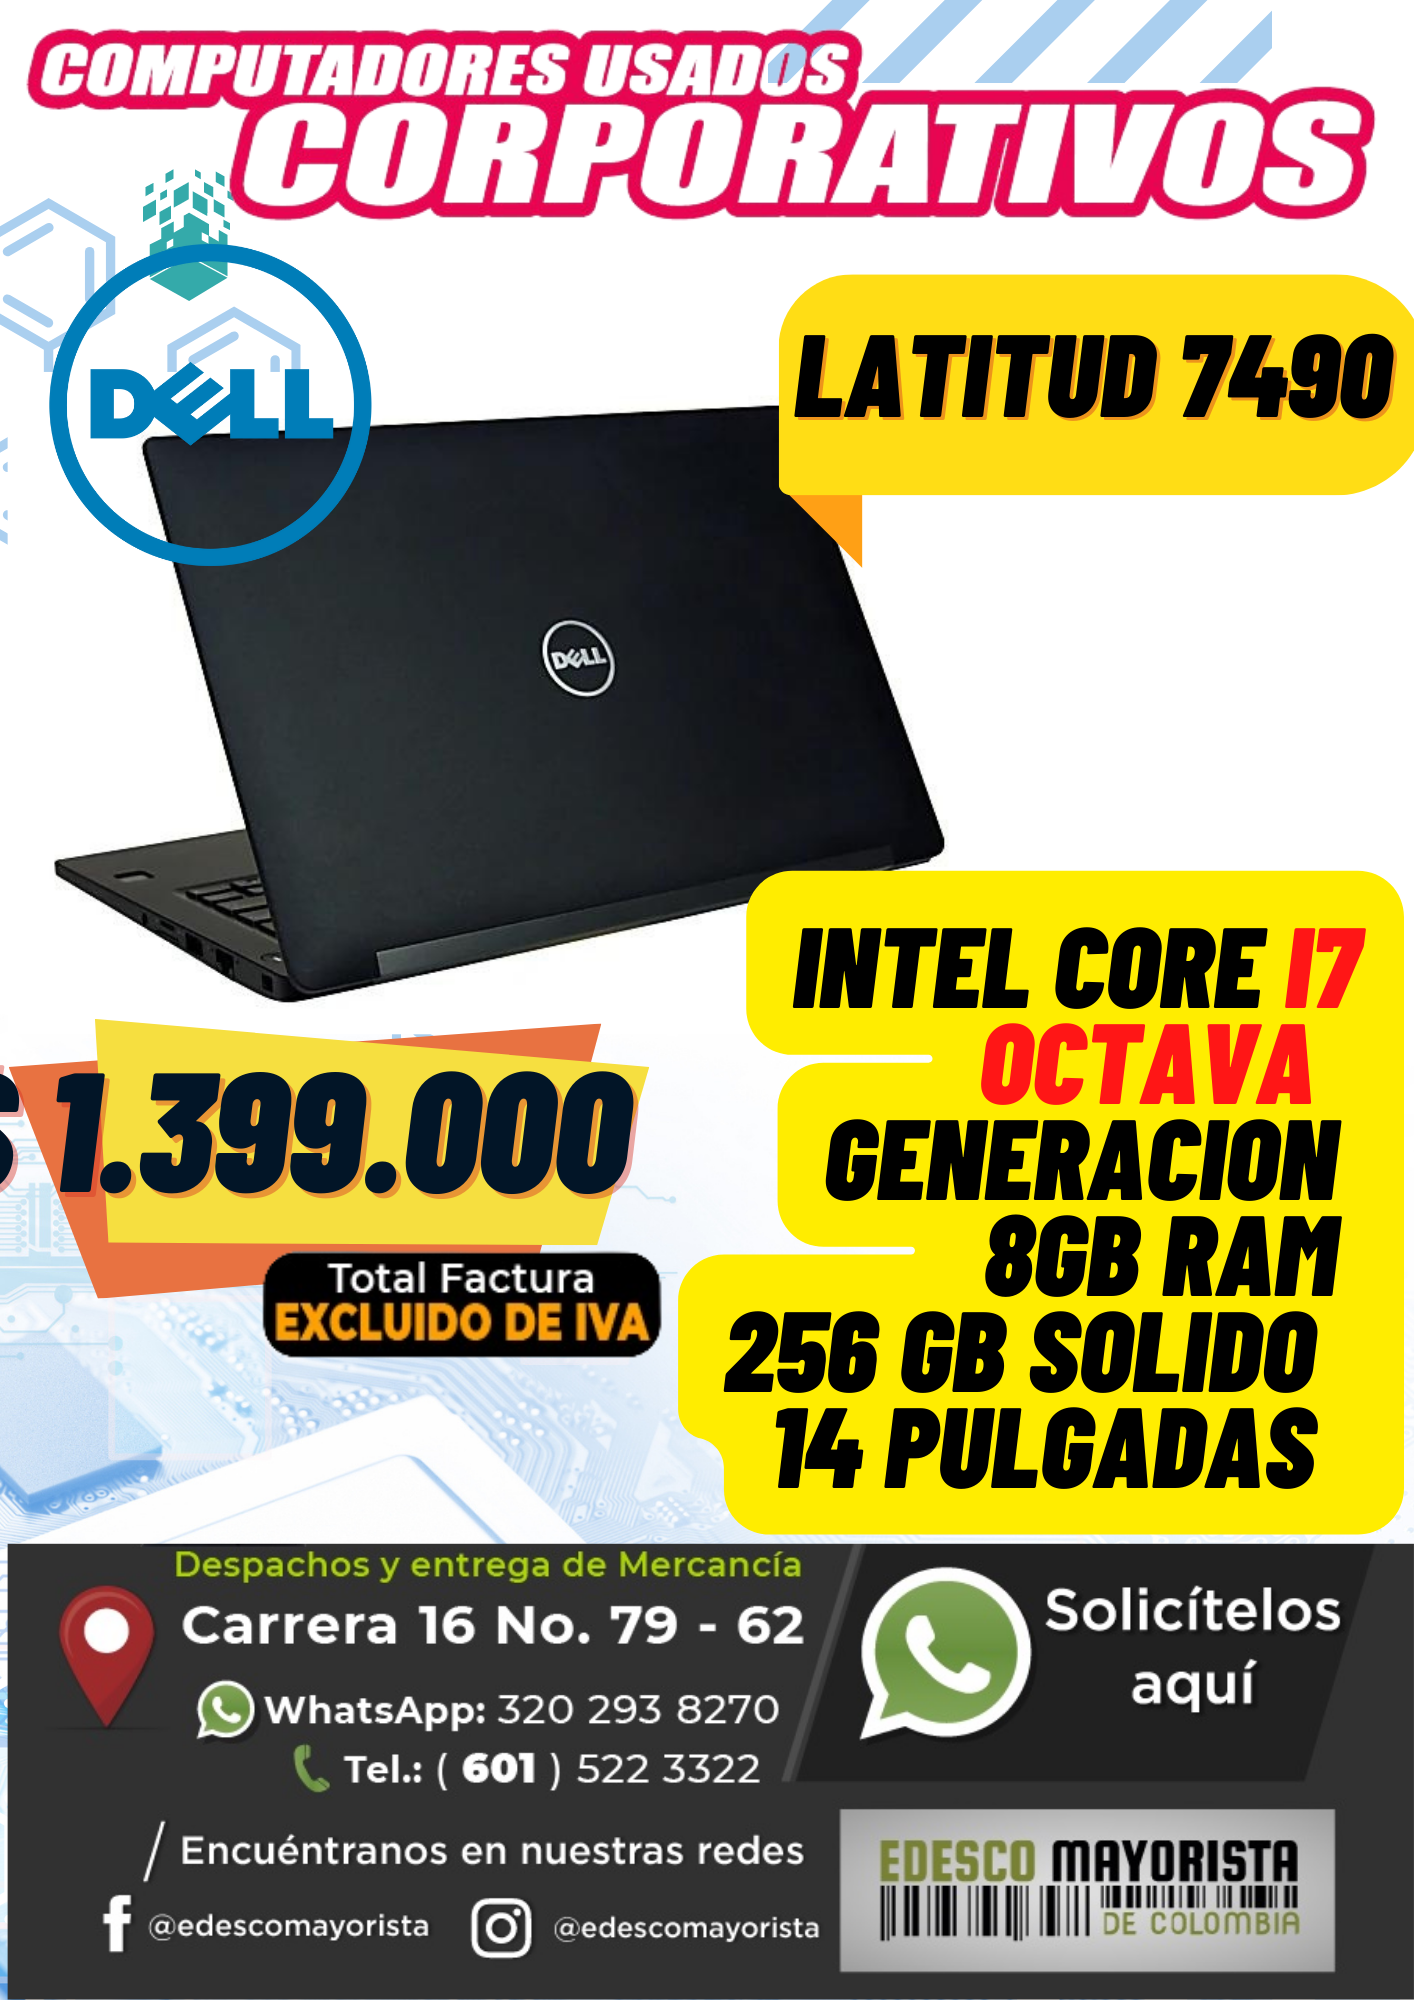 Dell 7490 core i7 14 pulgadas